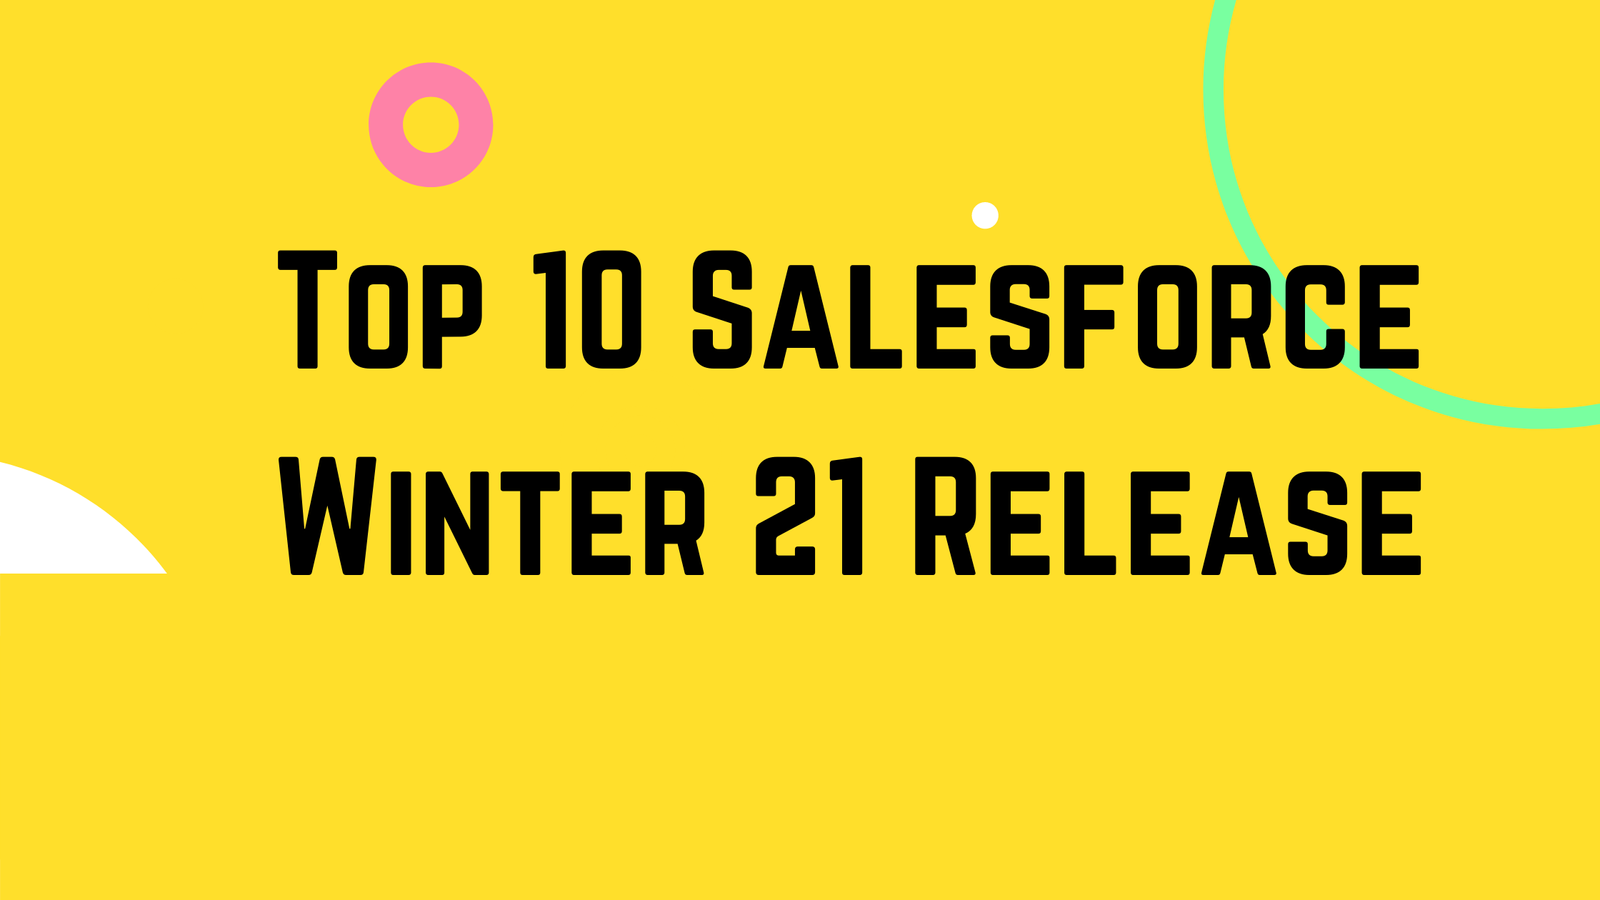 Top 10 Salesforce Winter 21 Release